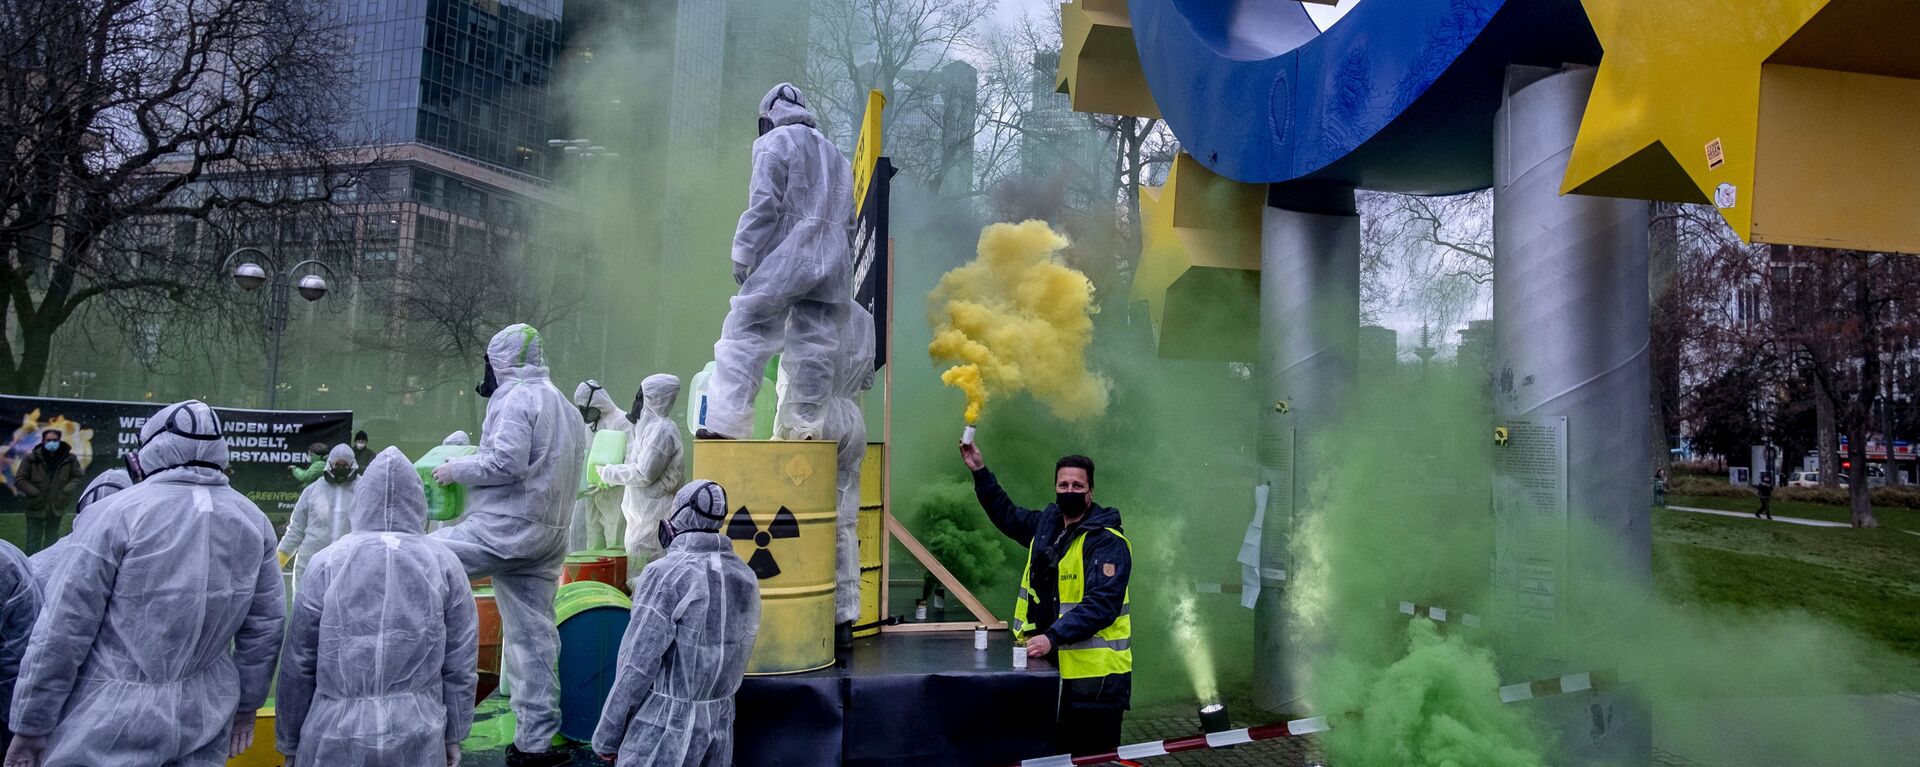 احتجاج نشطاء البيئة في غرينبيس و كوالا كولكتيف ضد غسل الاتحاد الأوروبي للطاقة النووية تحت تمثال اليورو في فرانكفورت، ألمانيا، 11 يناير 2022. - سبوتنيك عربي, 1920, 01.07.2022